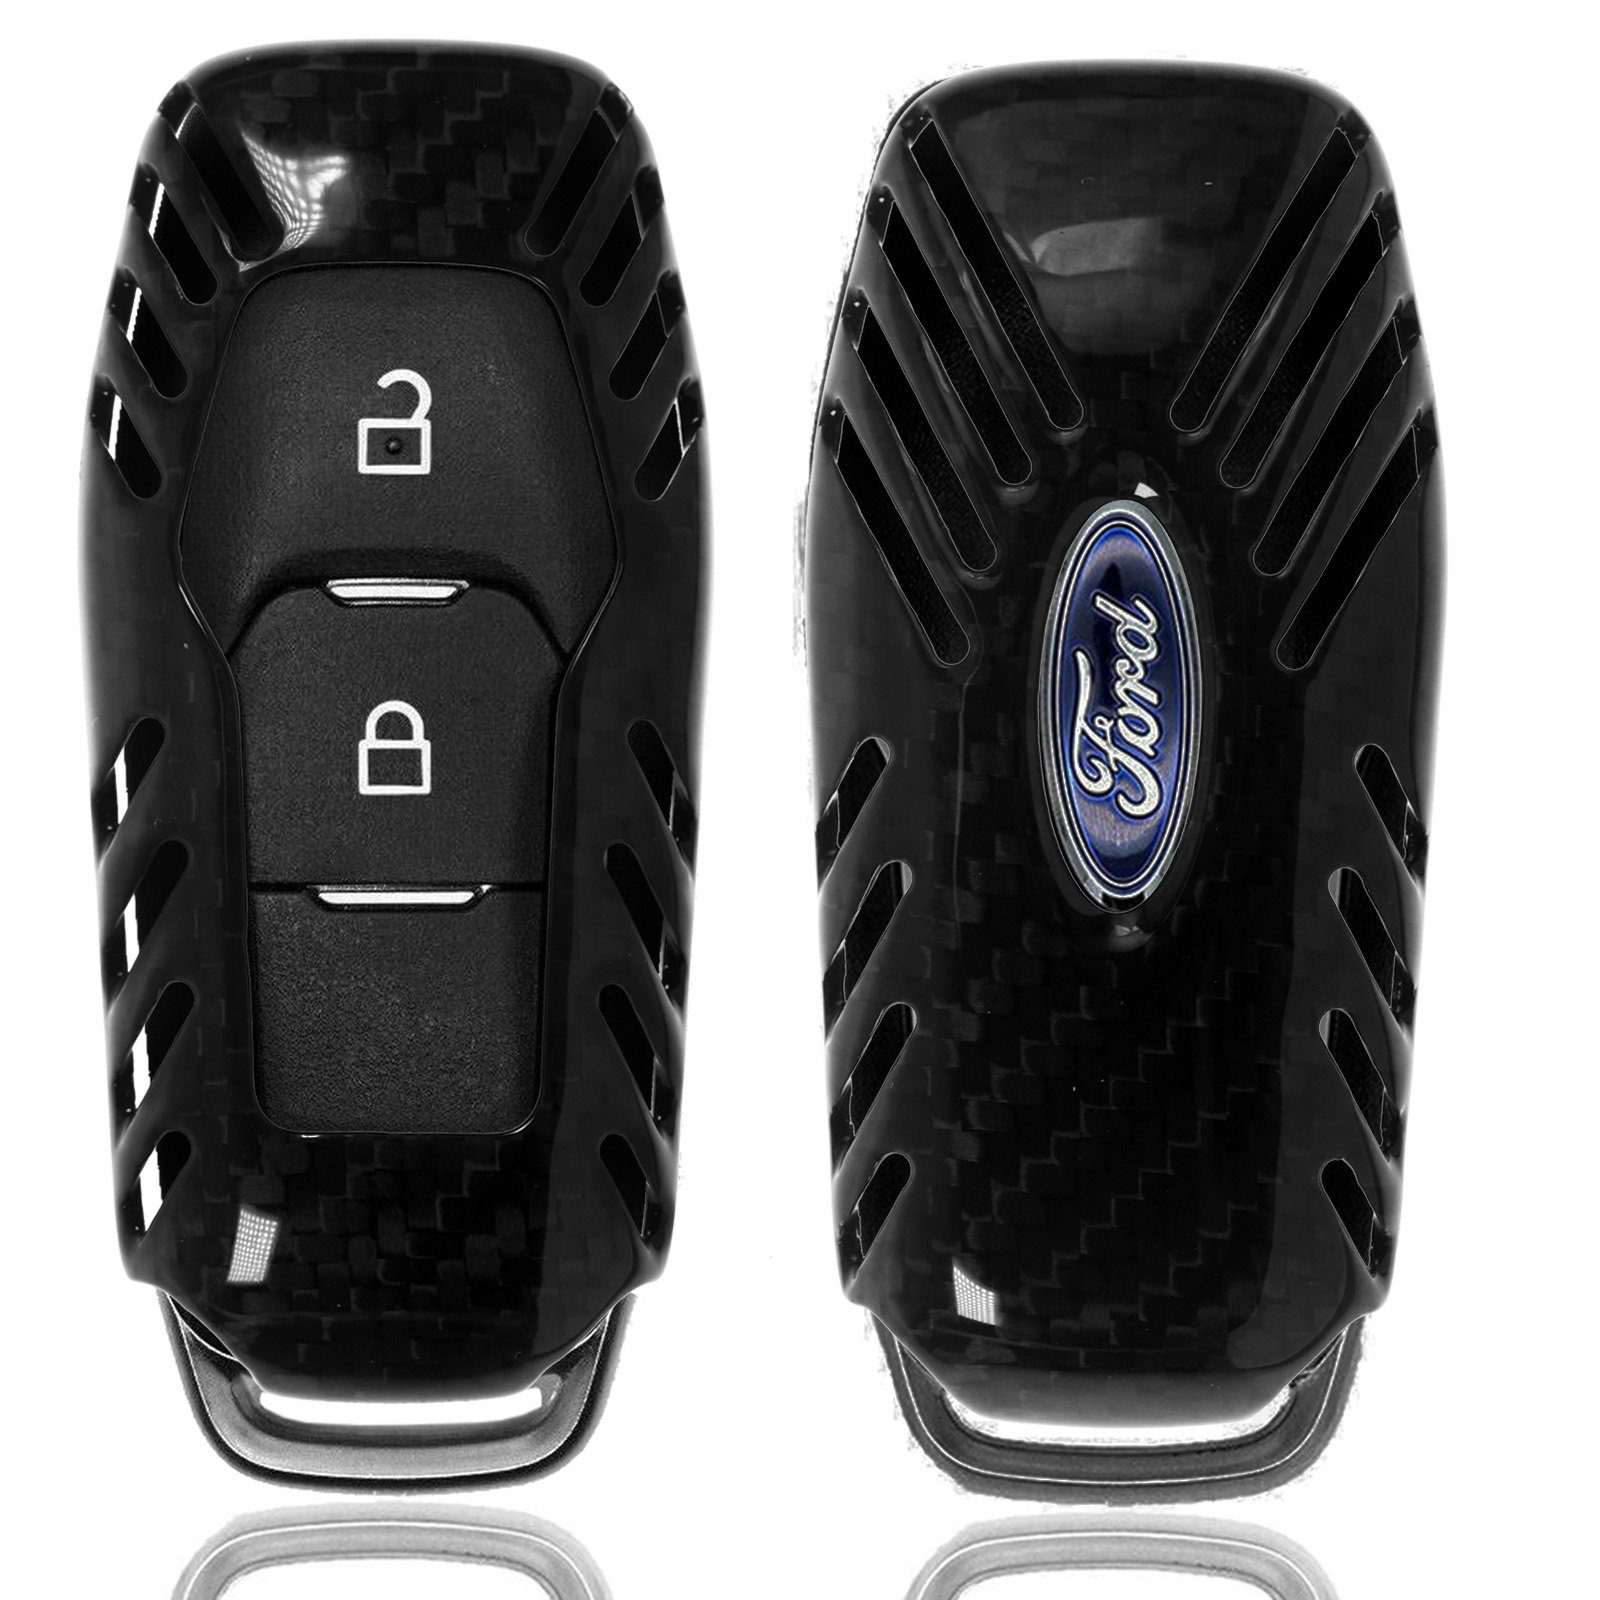 Auto Schlüssel Schutz Hülle Smartkey für Ford Focus Mondeo C-Max Fiesta  Kuga kaufen bei